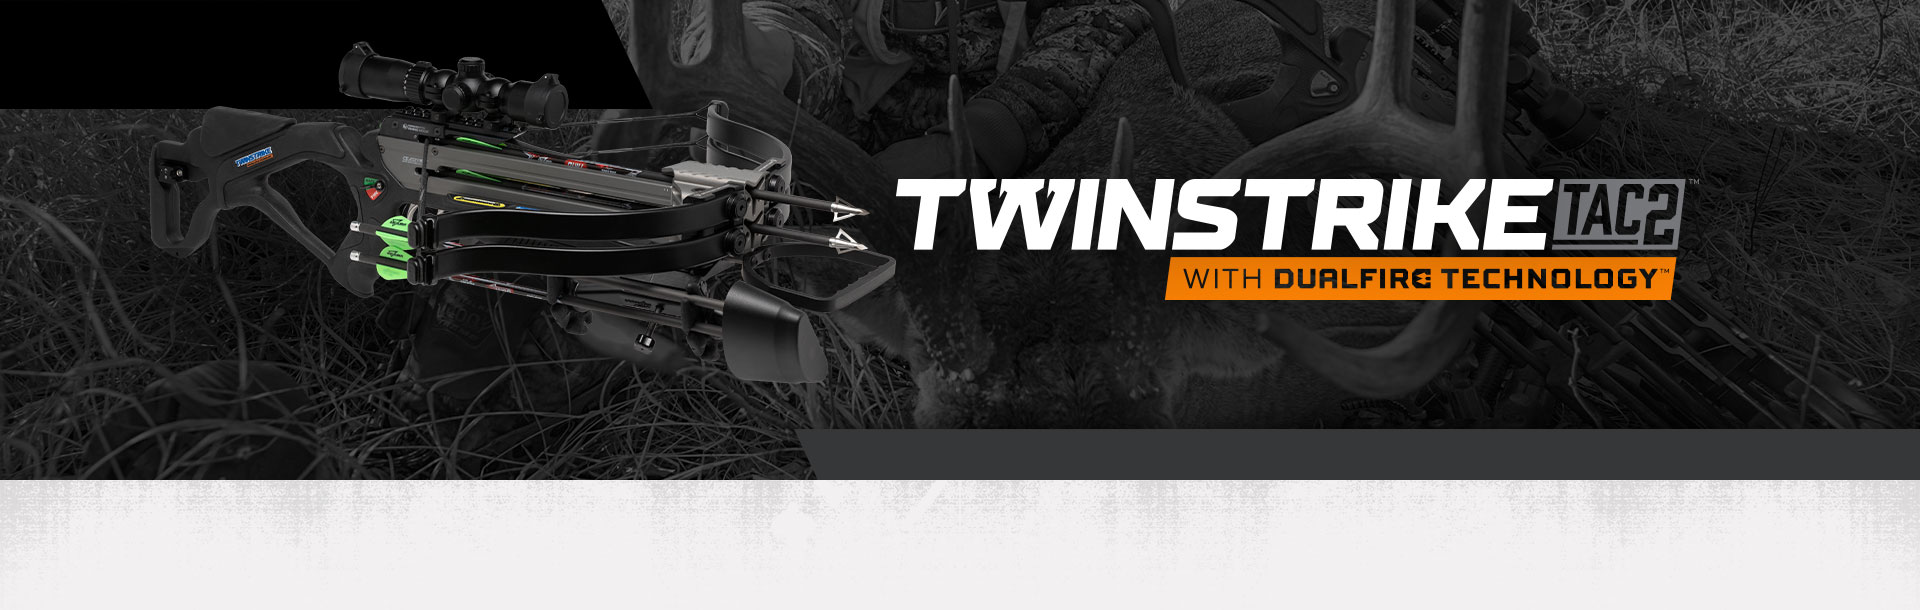 TwinStrike TAC2 crossbow desktop header image